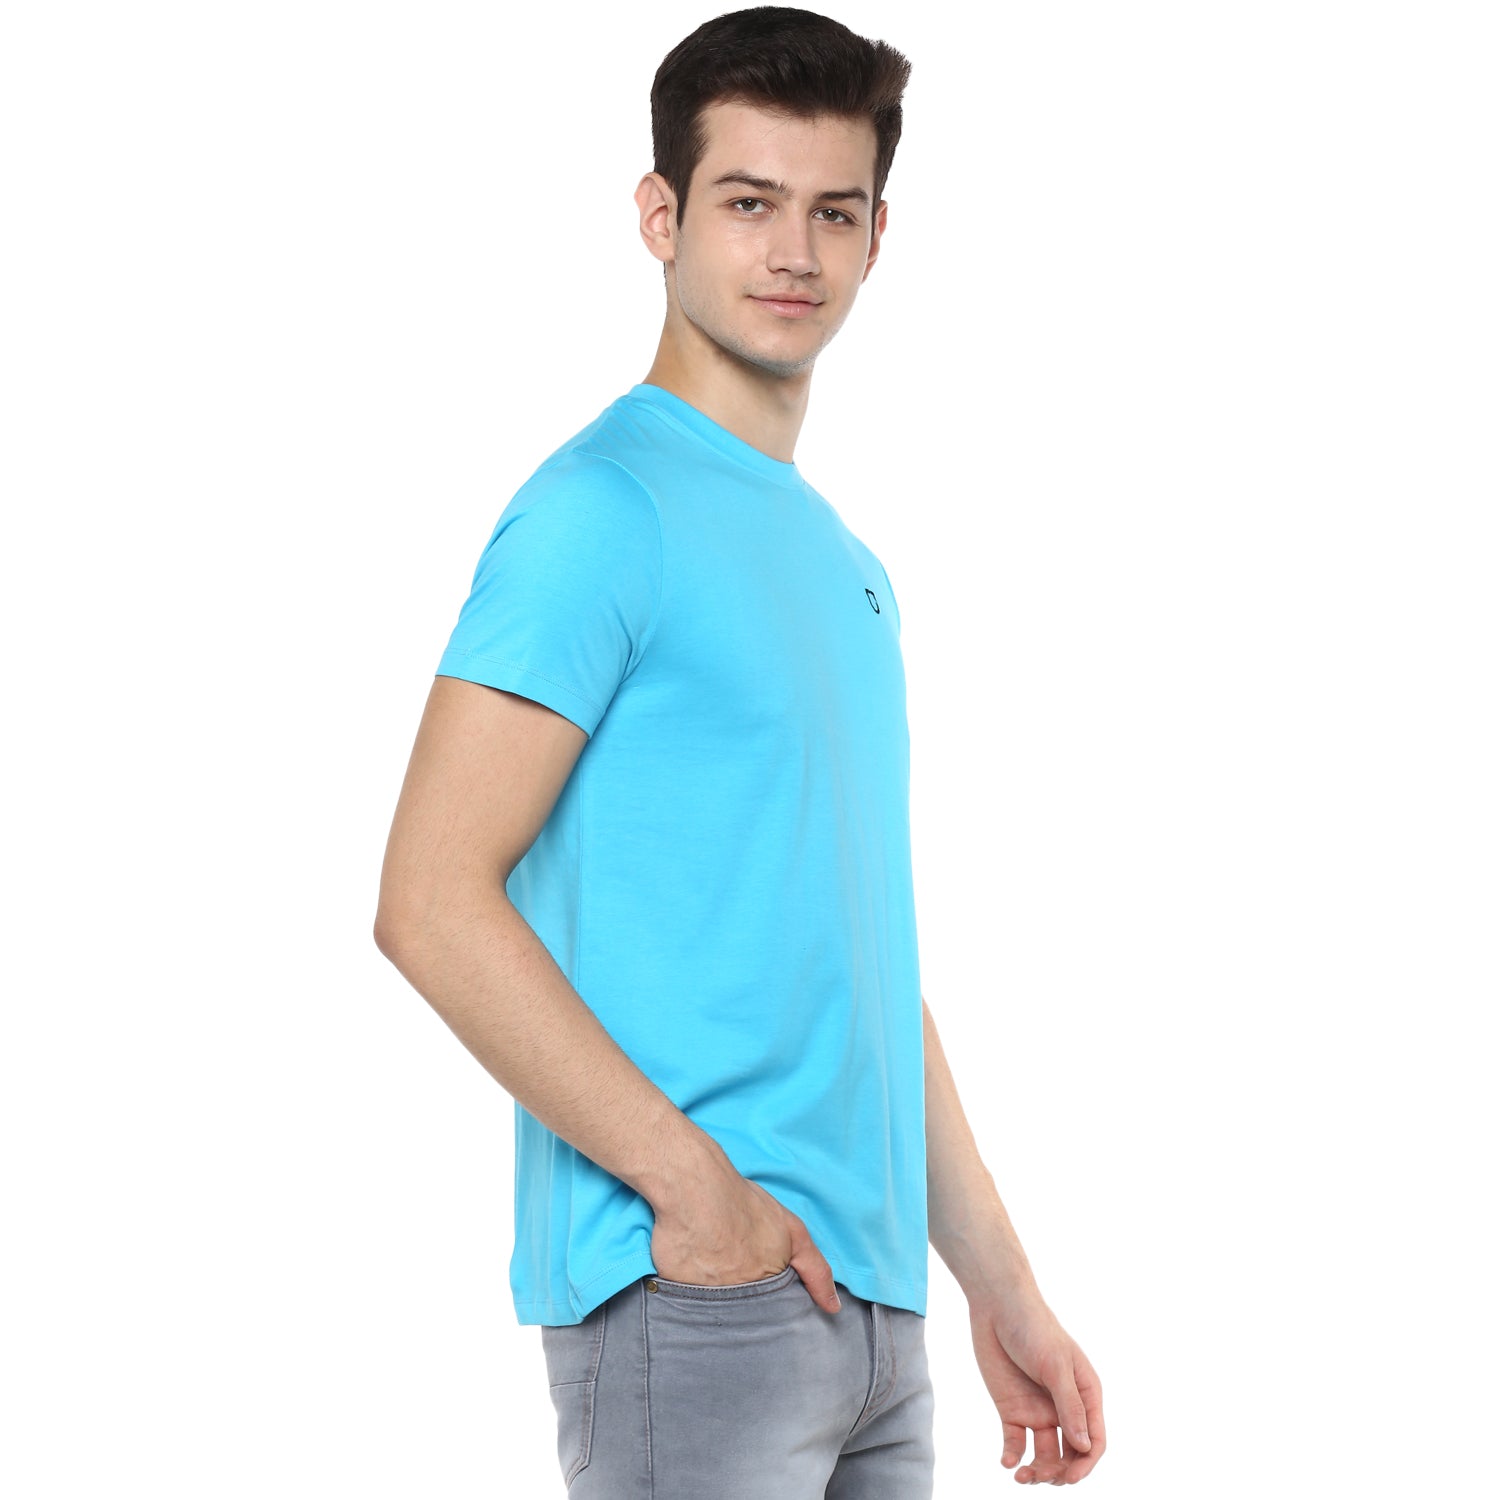 Men's Light Blue Solid Slim Fit Round Neck Cotton T-Shirt